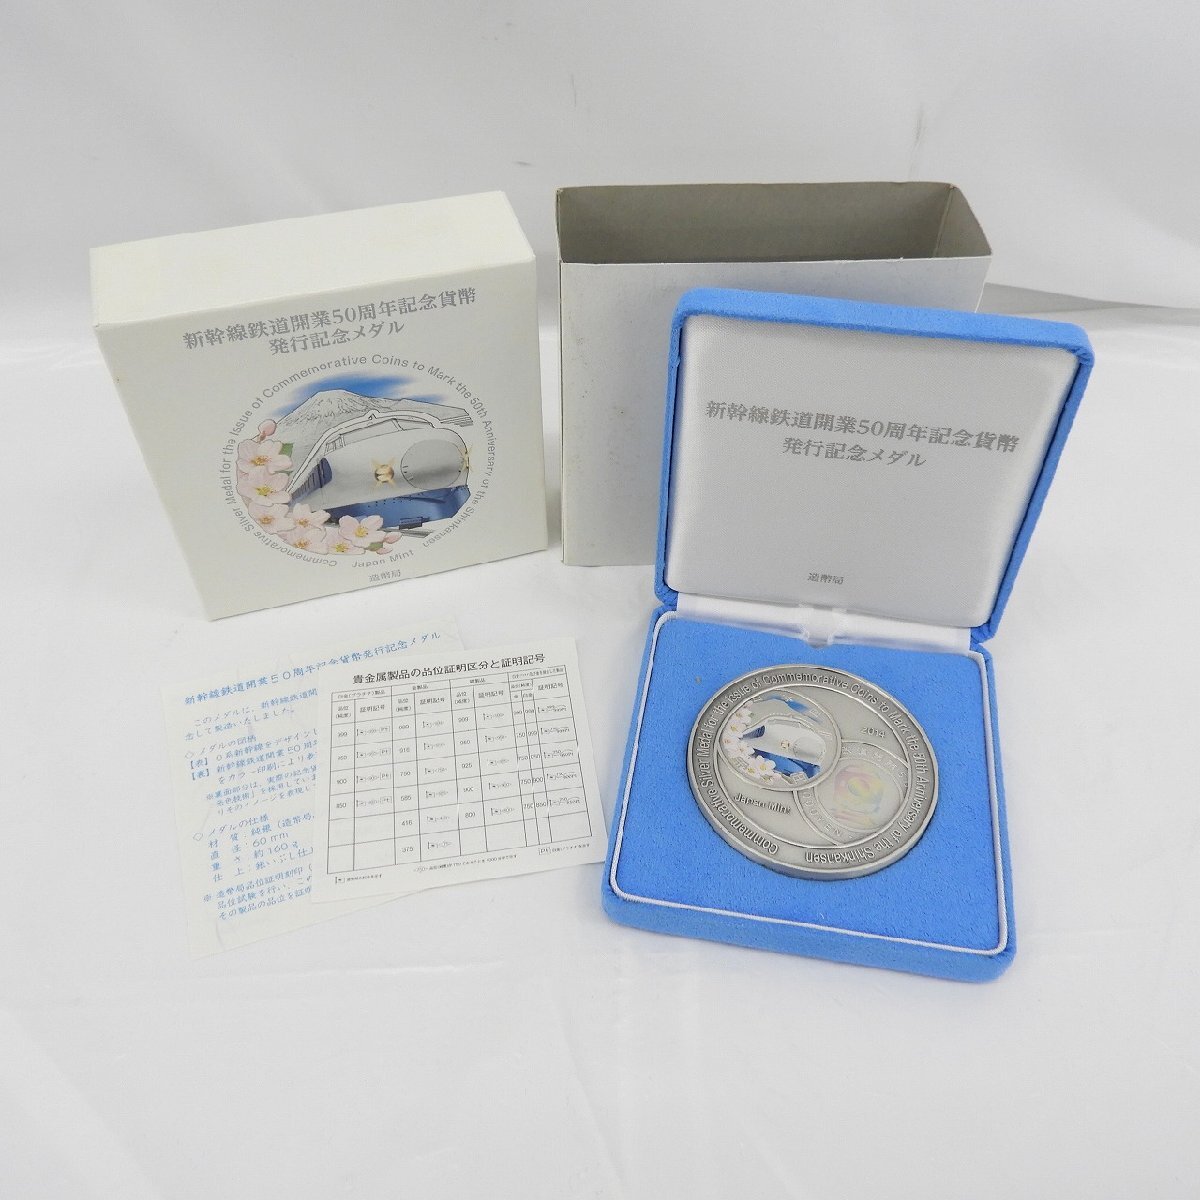 【記念メダル】新幹線鉄道開業50周年記念貨幣発行記念メダル 165.4g 箱付 807117328 0413の画像1